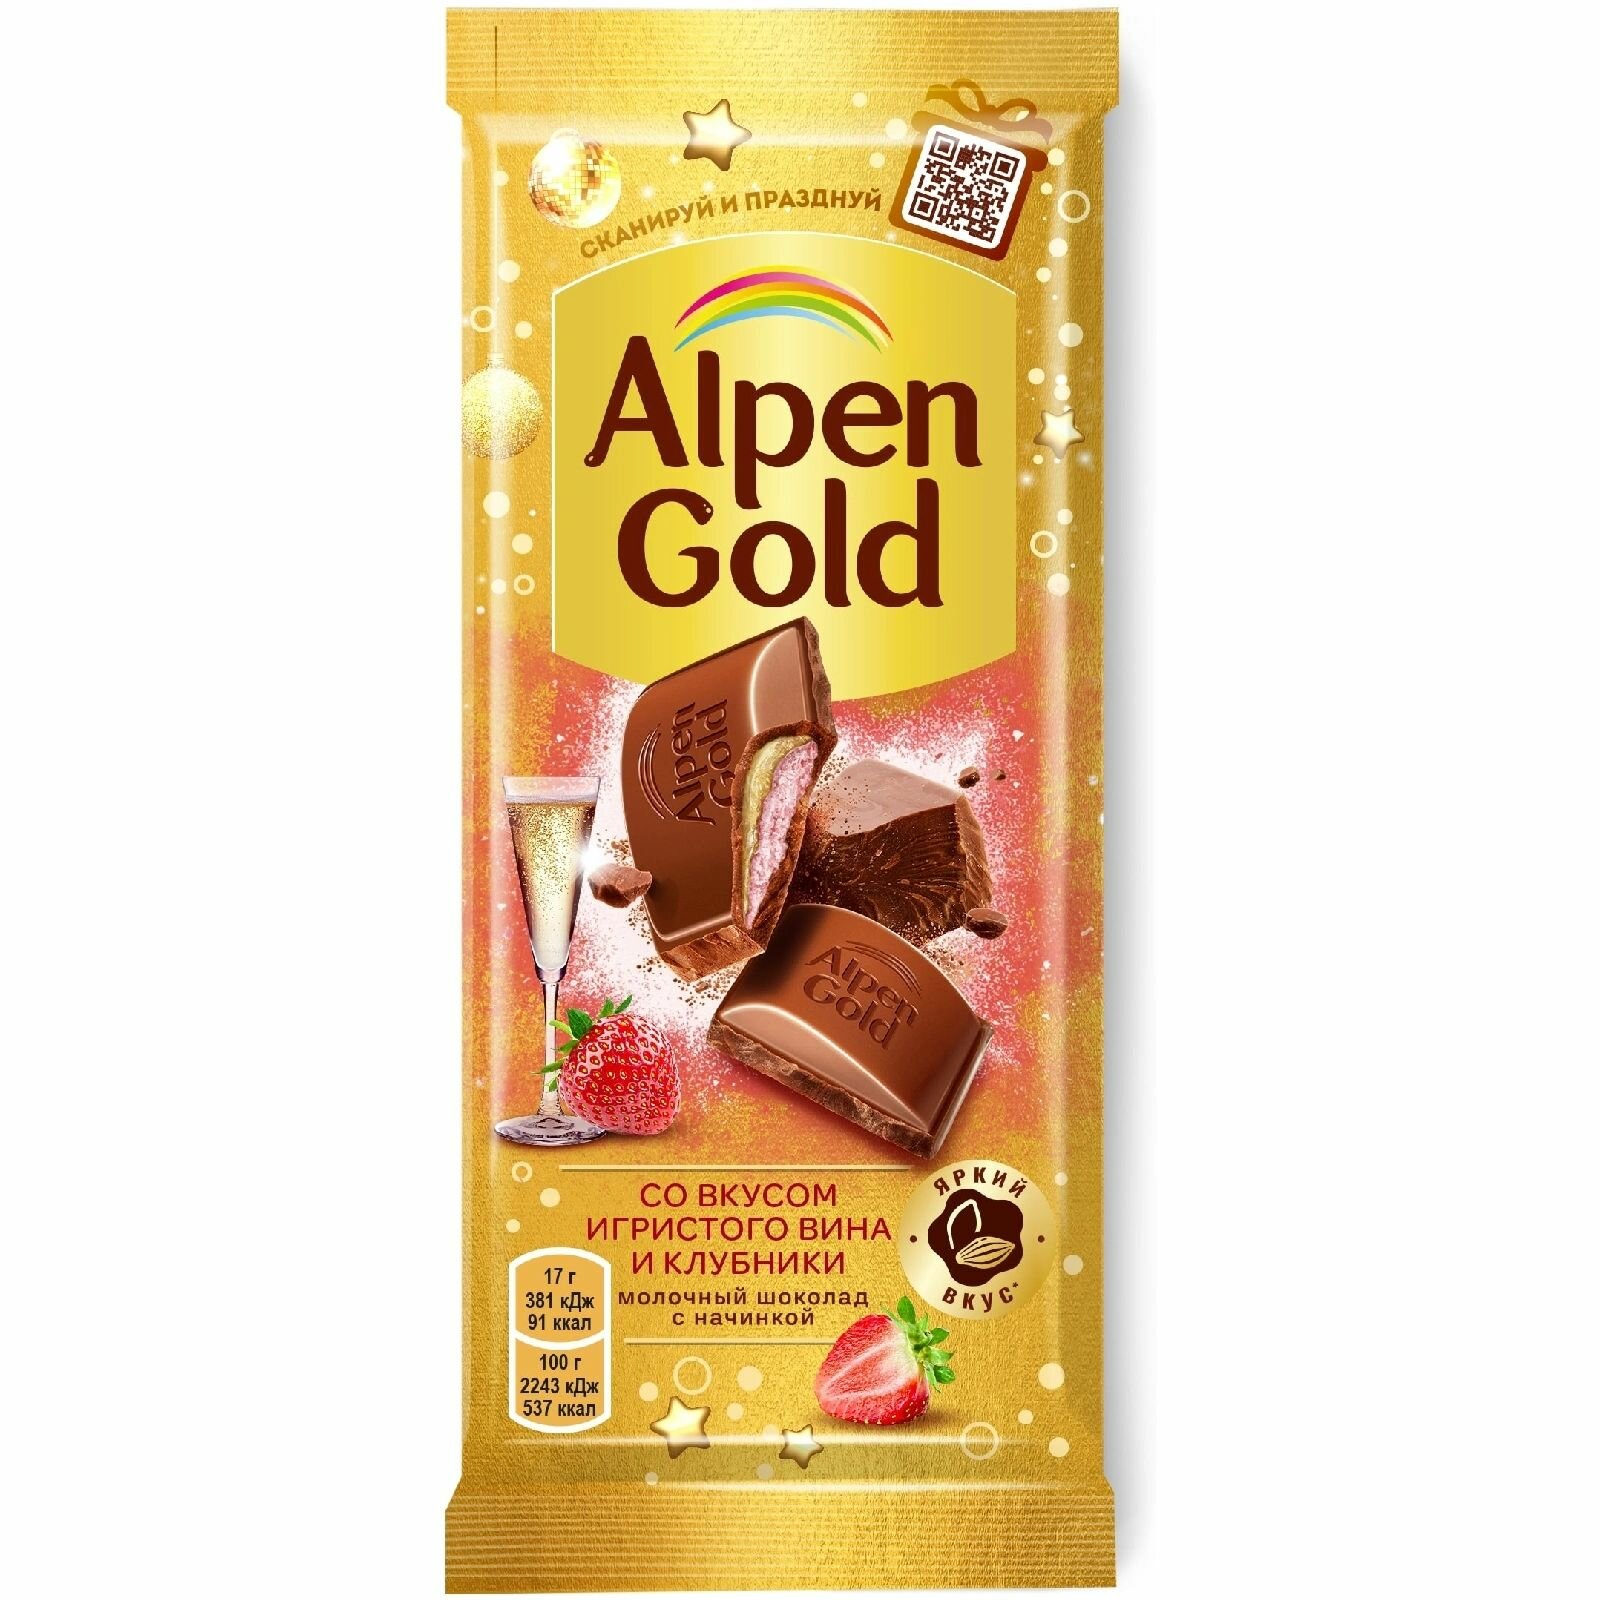 Шоколад молочный Alpen Gold с начинкой игристое вино-клубника, 85г, 21 шт